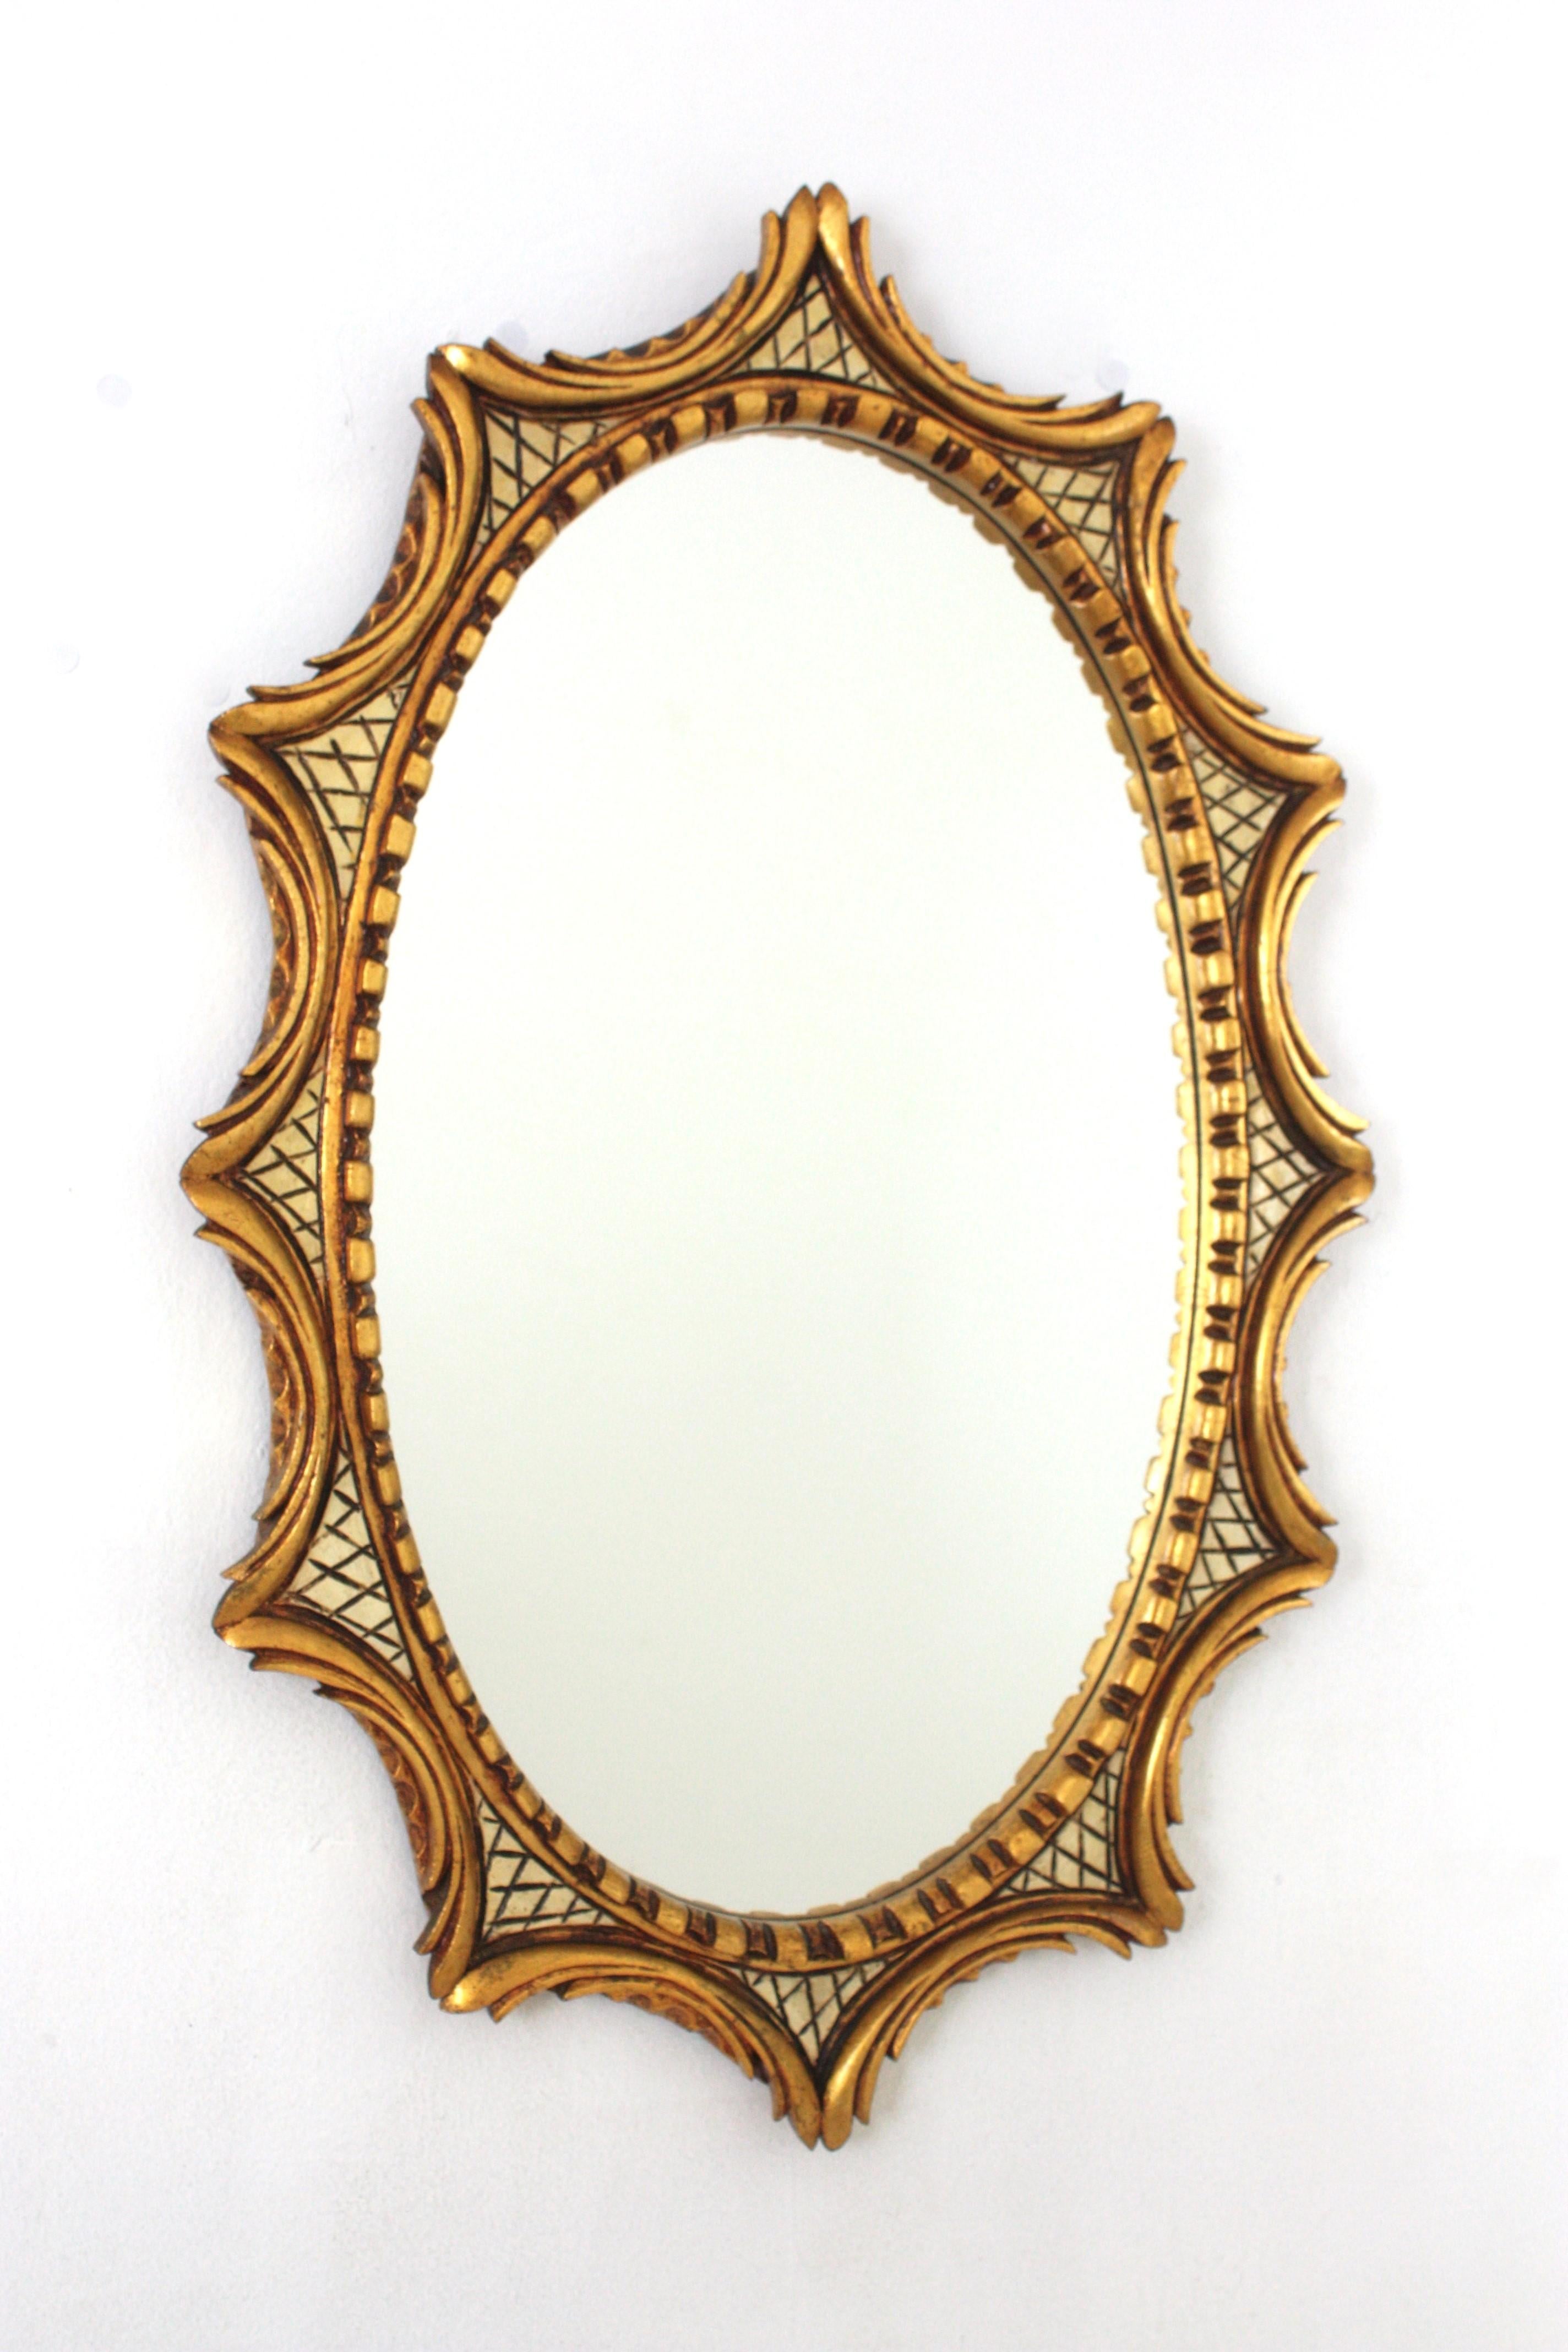 Hollywood Regency Giltwood Oval Sunburst Mirror, Spanien, 1950er-1960er Jahre.
Einzigartiger vergoldeter ovaler Wandspiegel in Starburst- oder Sunburst-Form gerahmt. Schön geschnitzt Laub inspiriert Scroll Details mit einem geschwungenen Muster rund